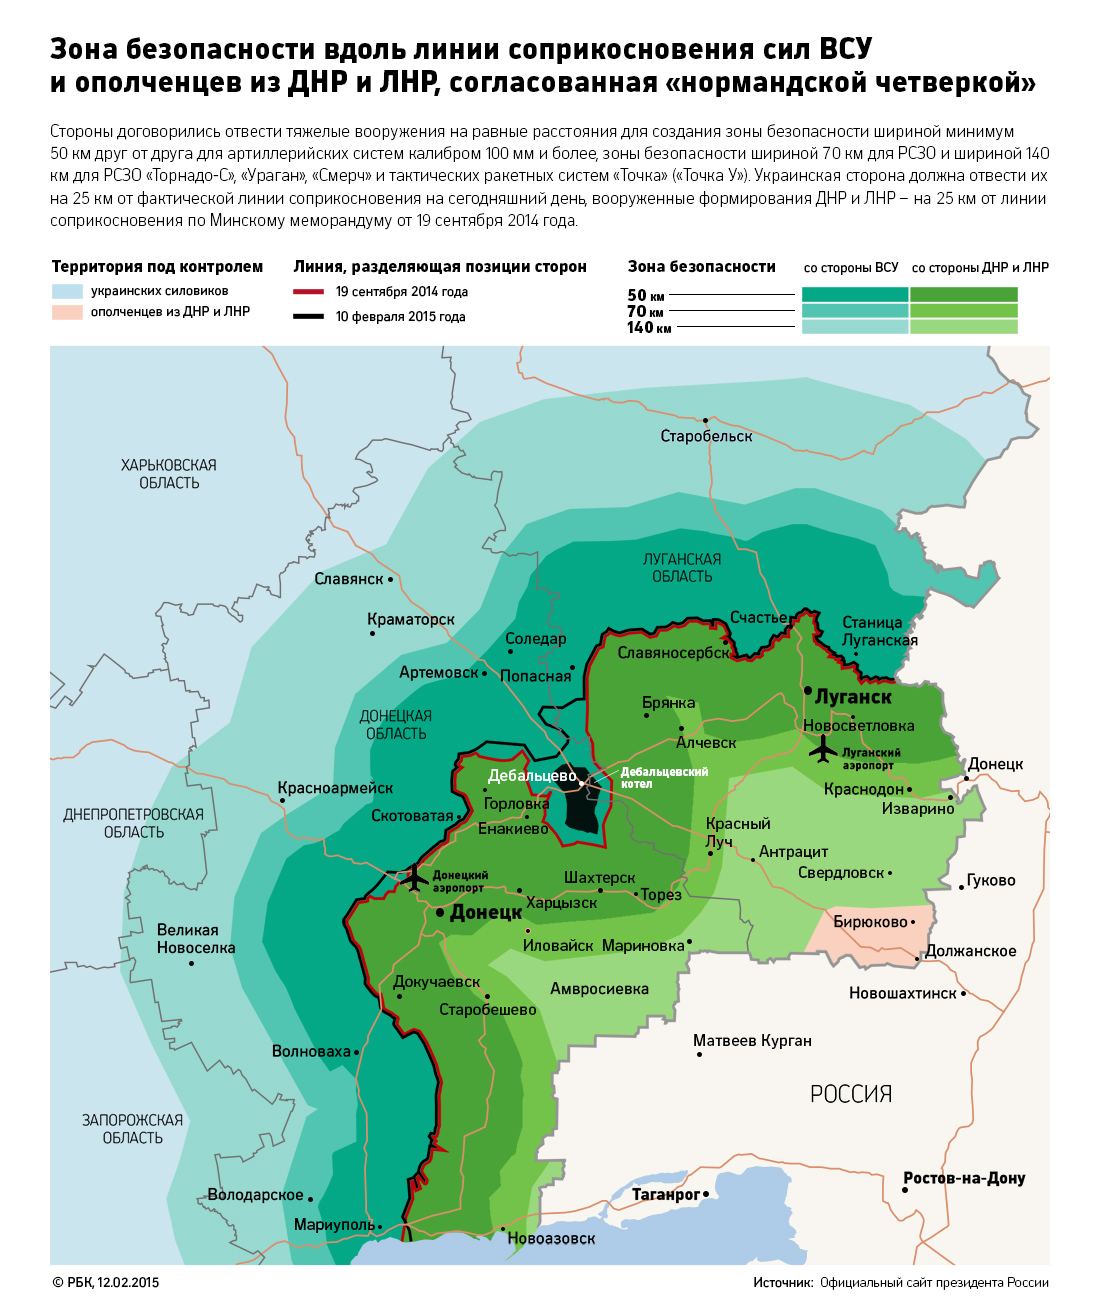 Киев вслед за ДНР заявил об отказе начать отвод тяжелых вооружений